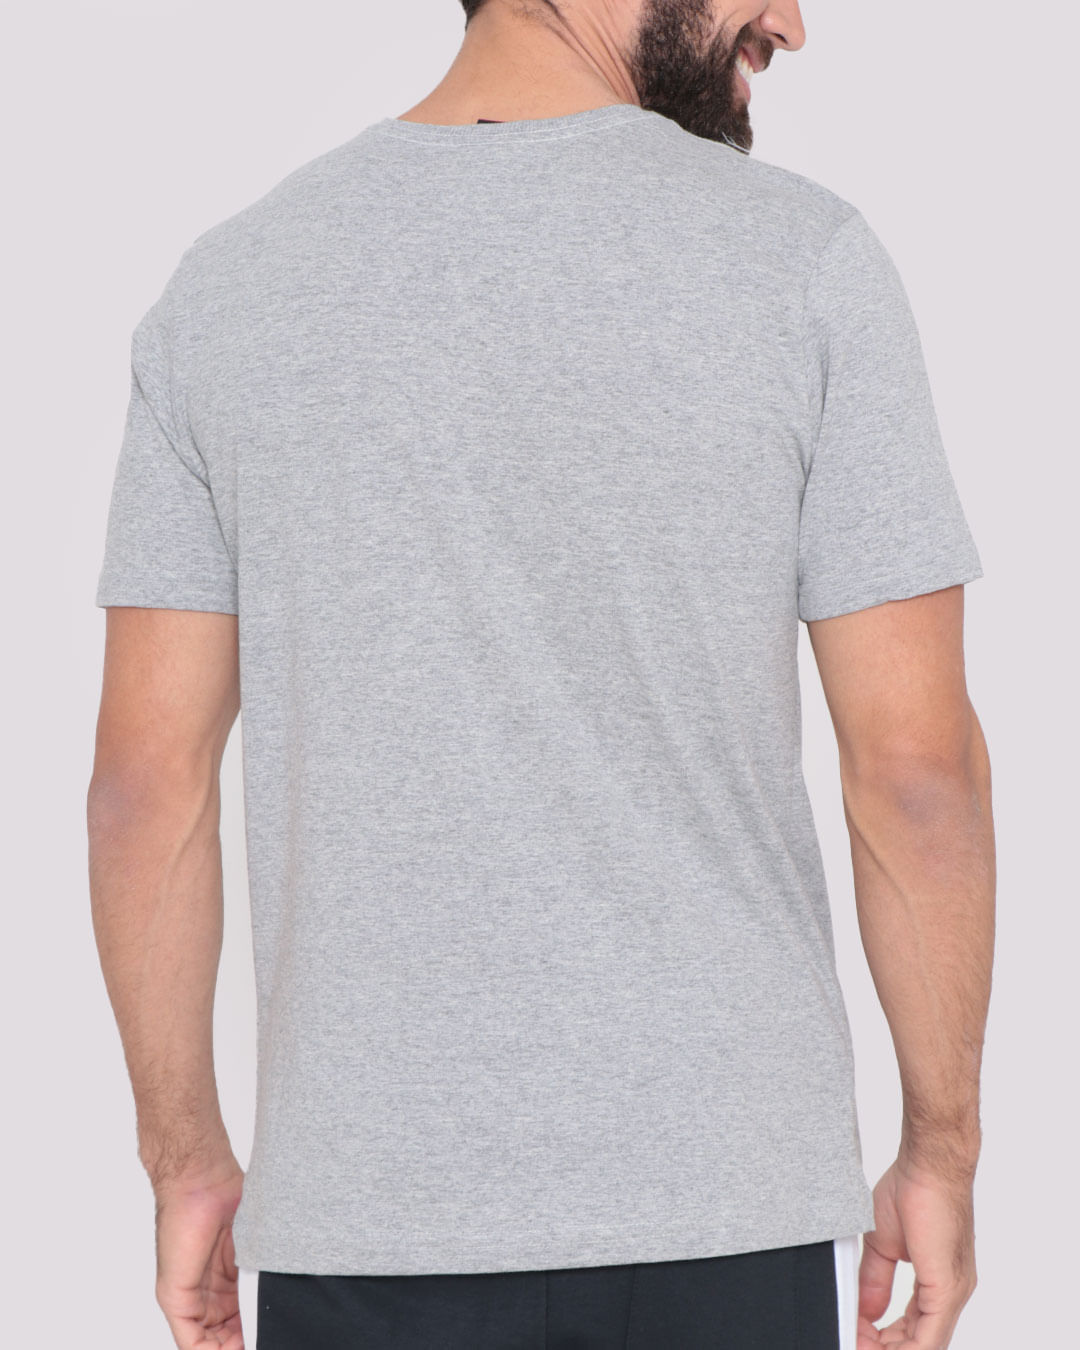 Camiseta-Estampa-Ecko-Unlimited-Cinza-Claro